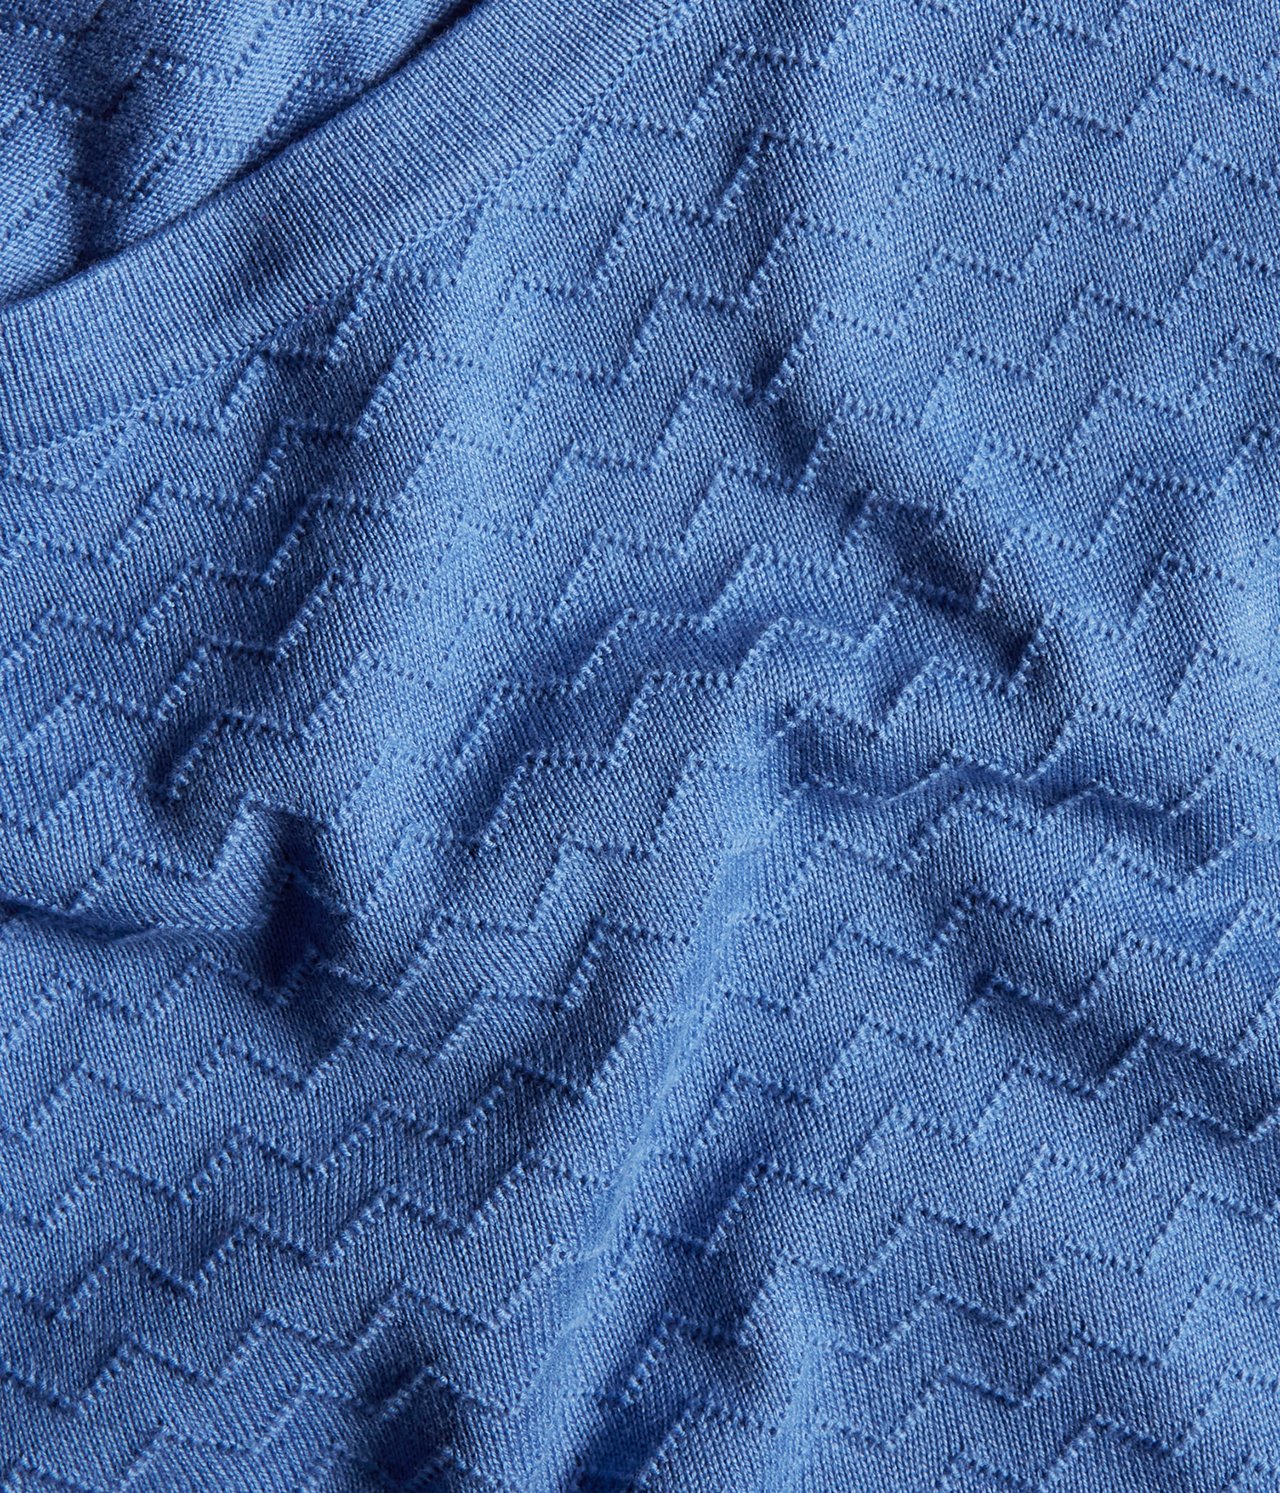 Mönsterstickad tröja Blå - null - 3